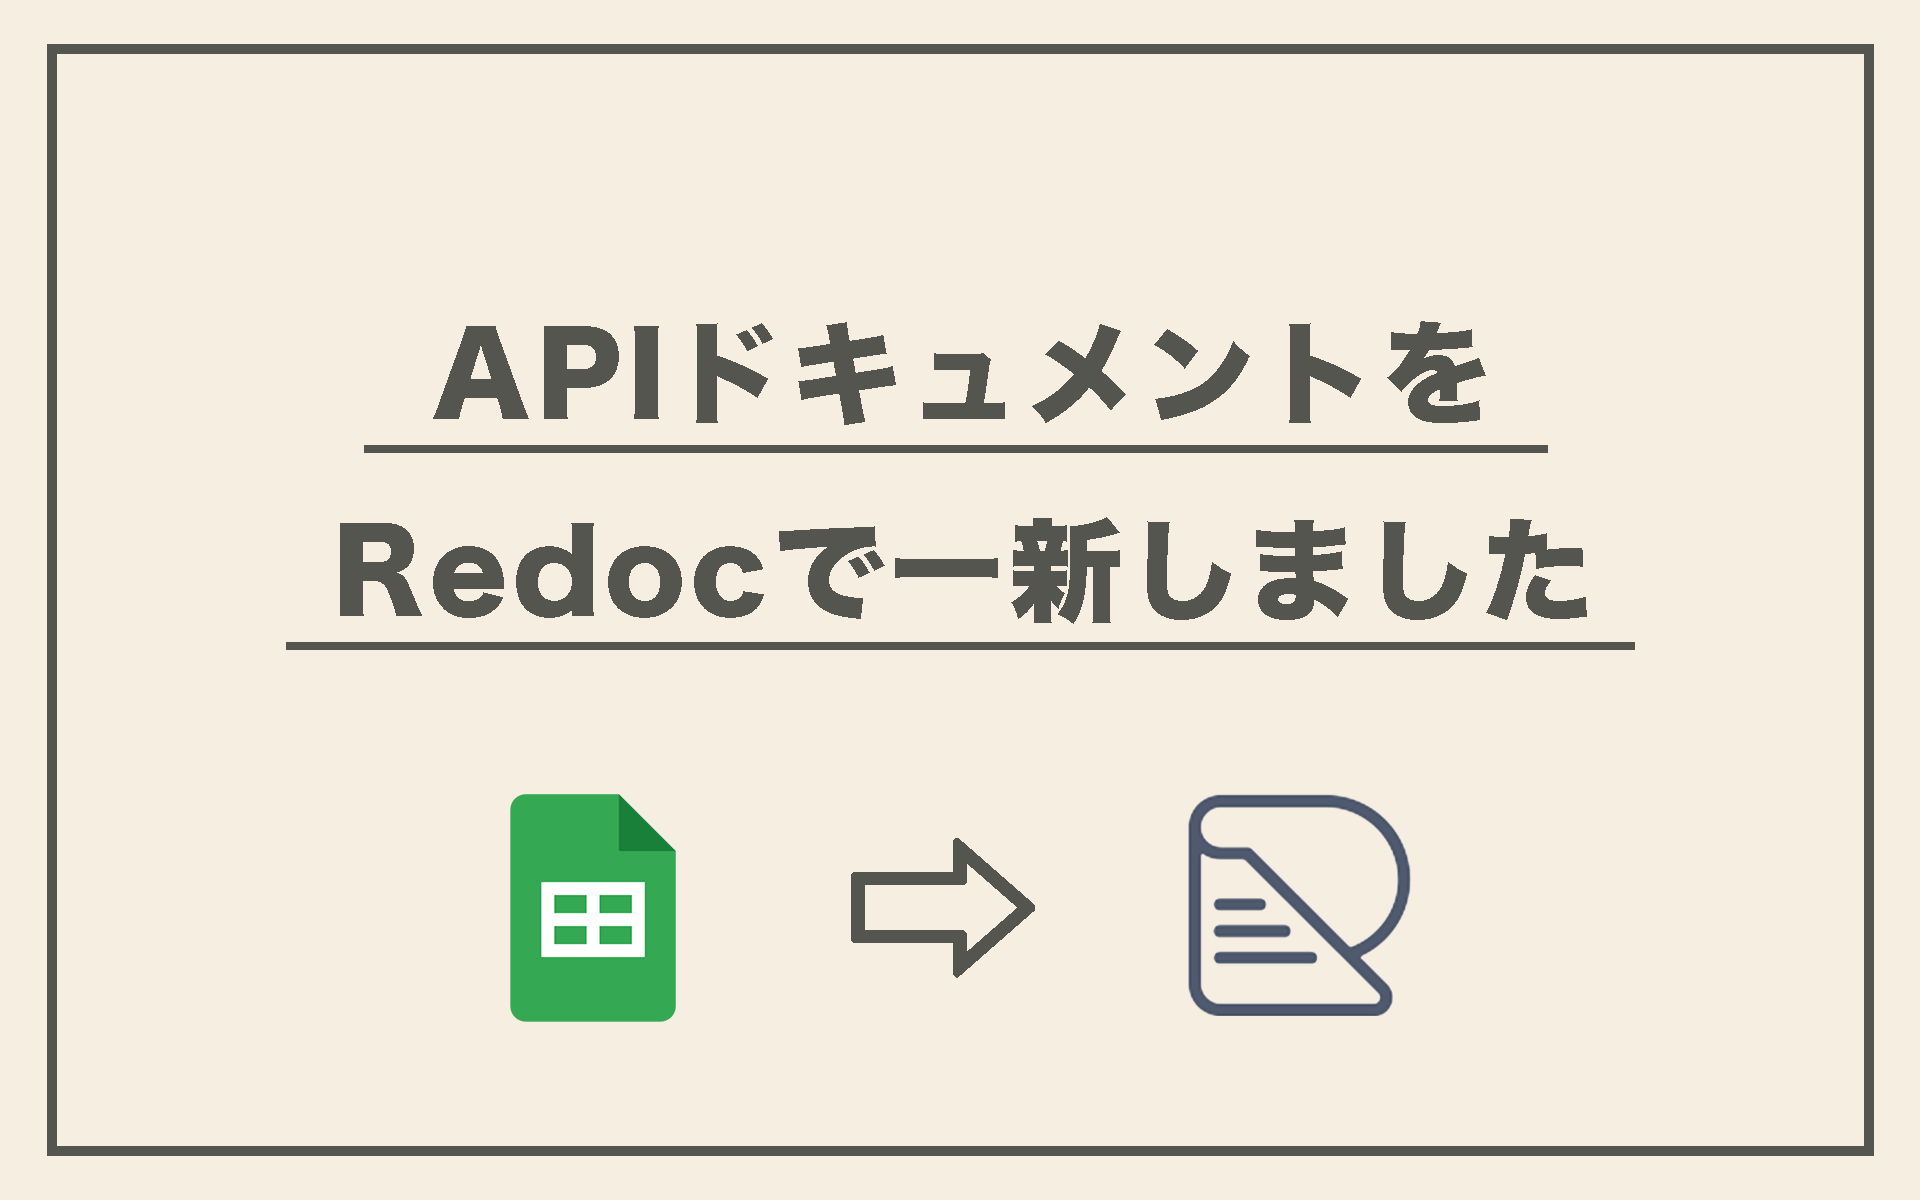 APIドキュメントをRedocで一新しました